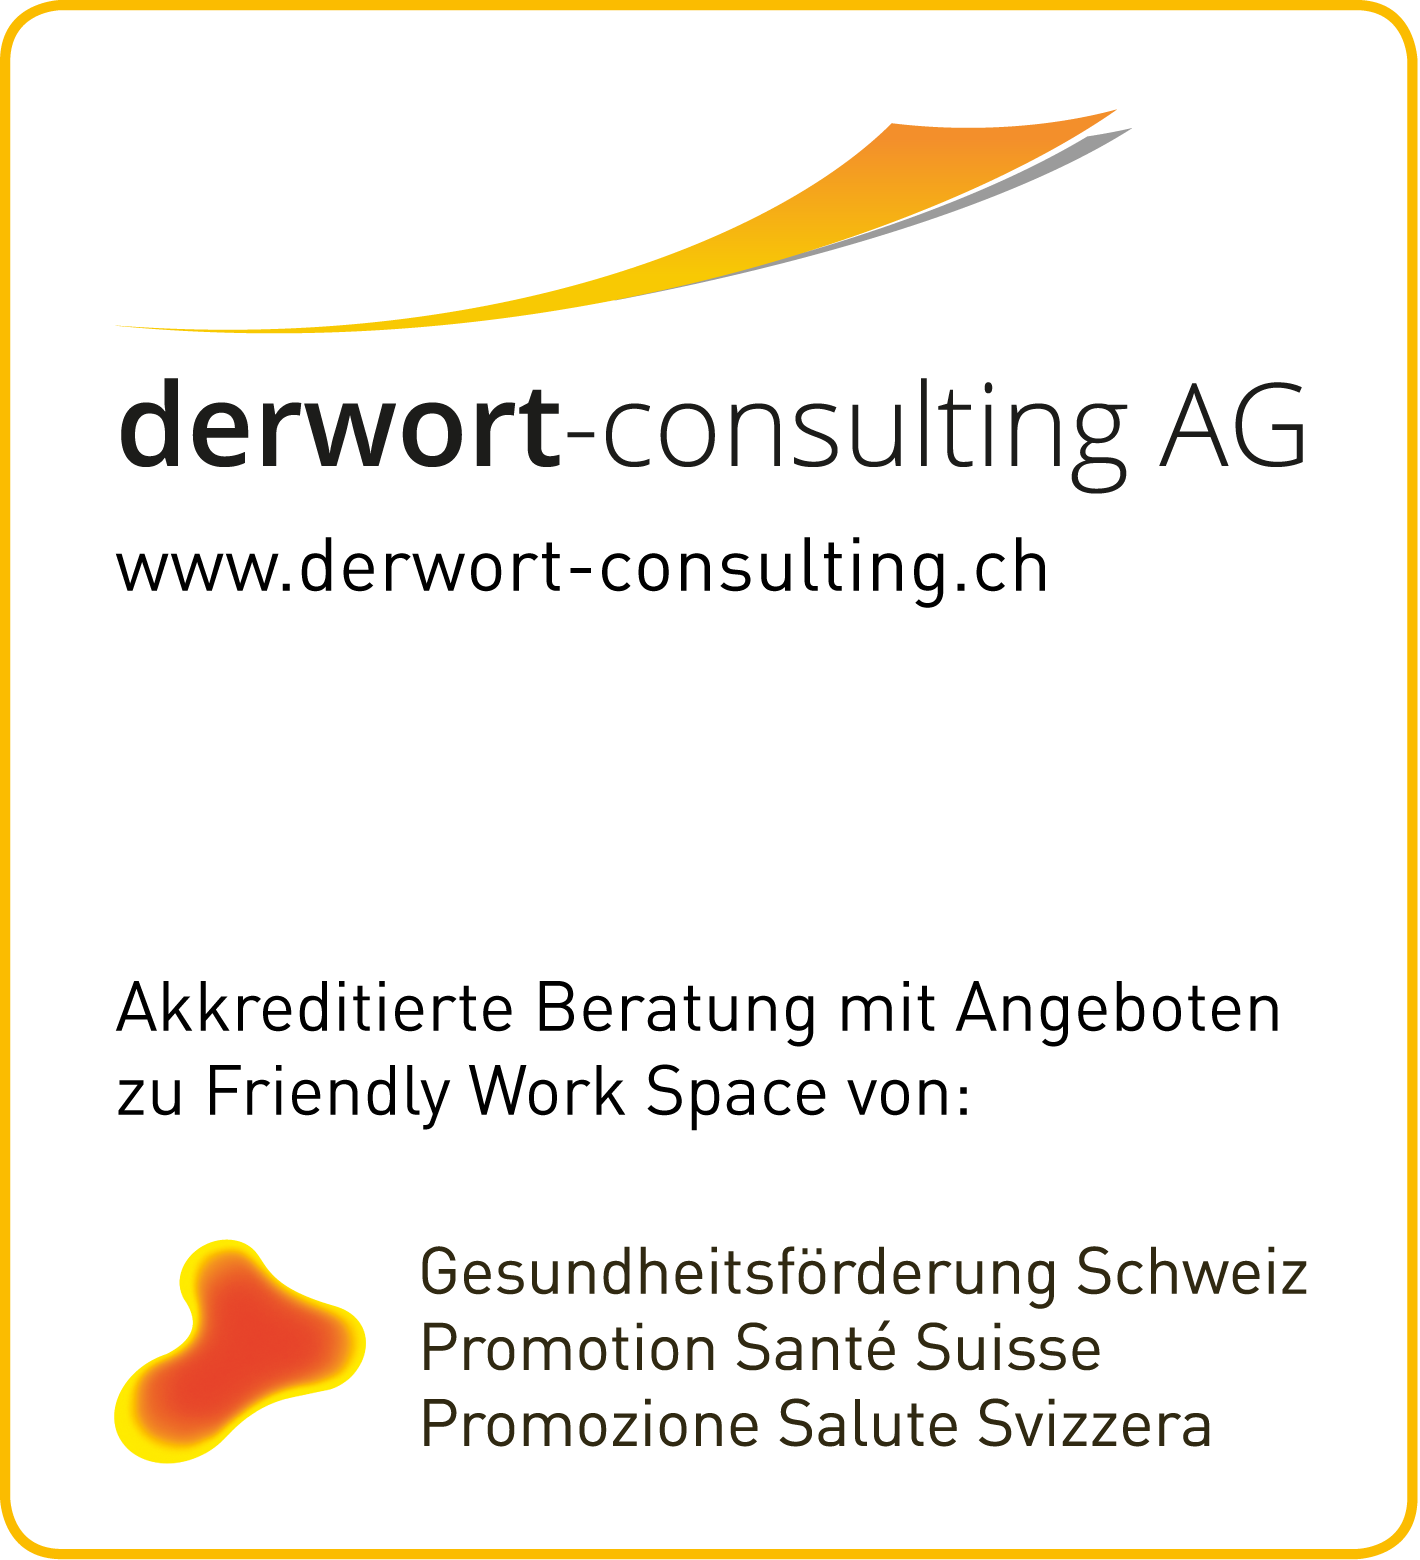 derwort-consulting AG_Janosch Derwort_Beratung Friendly Workspace_Gesundheitsförderung Schweiz